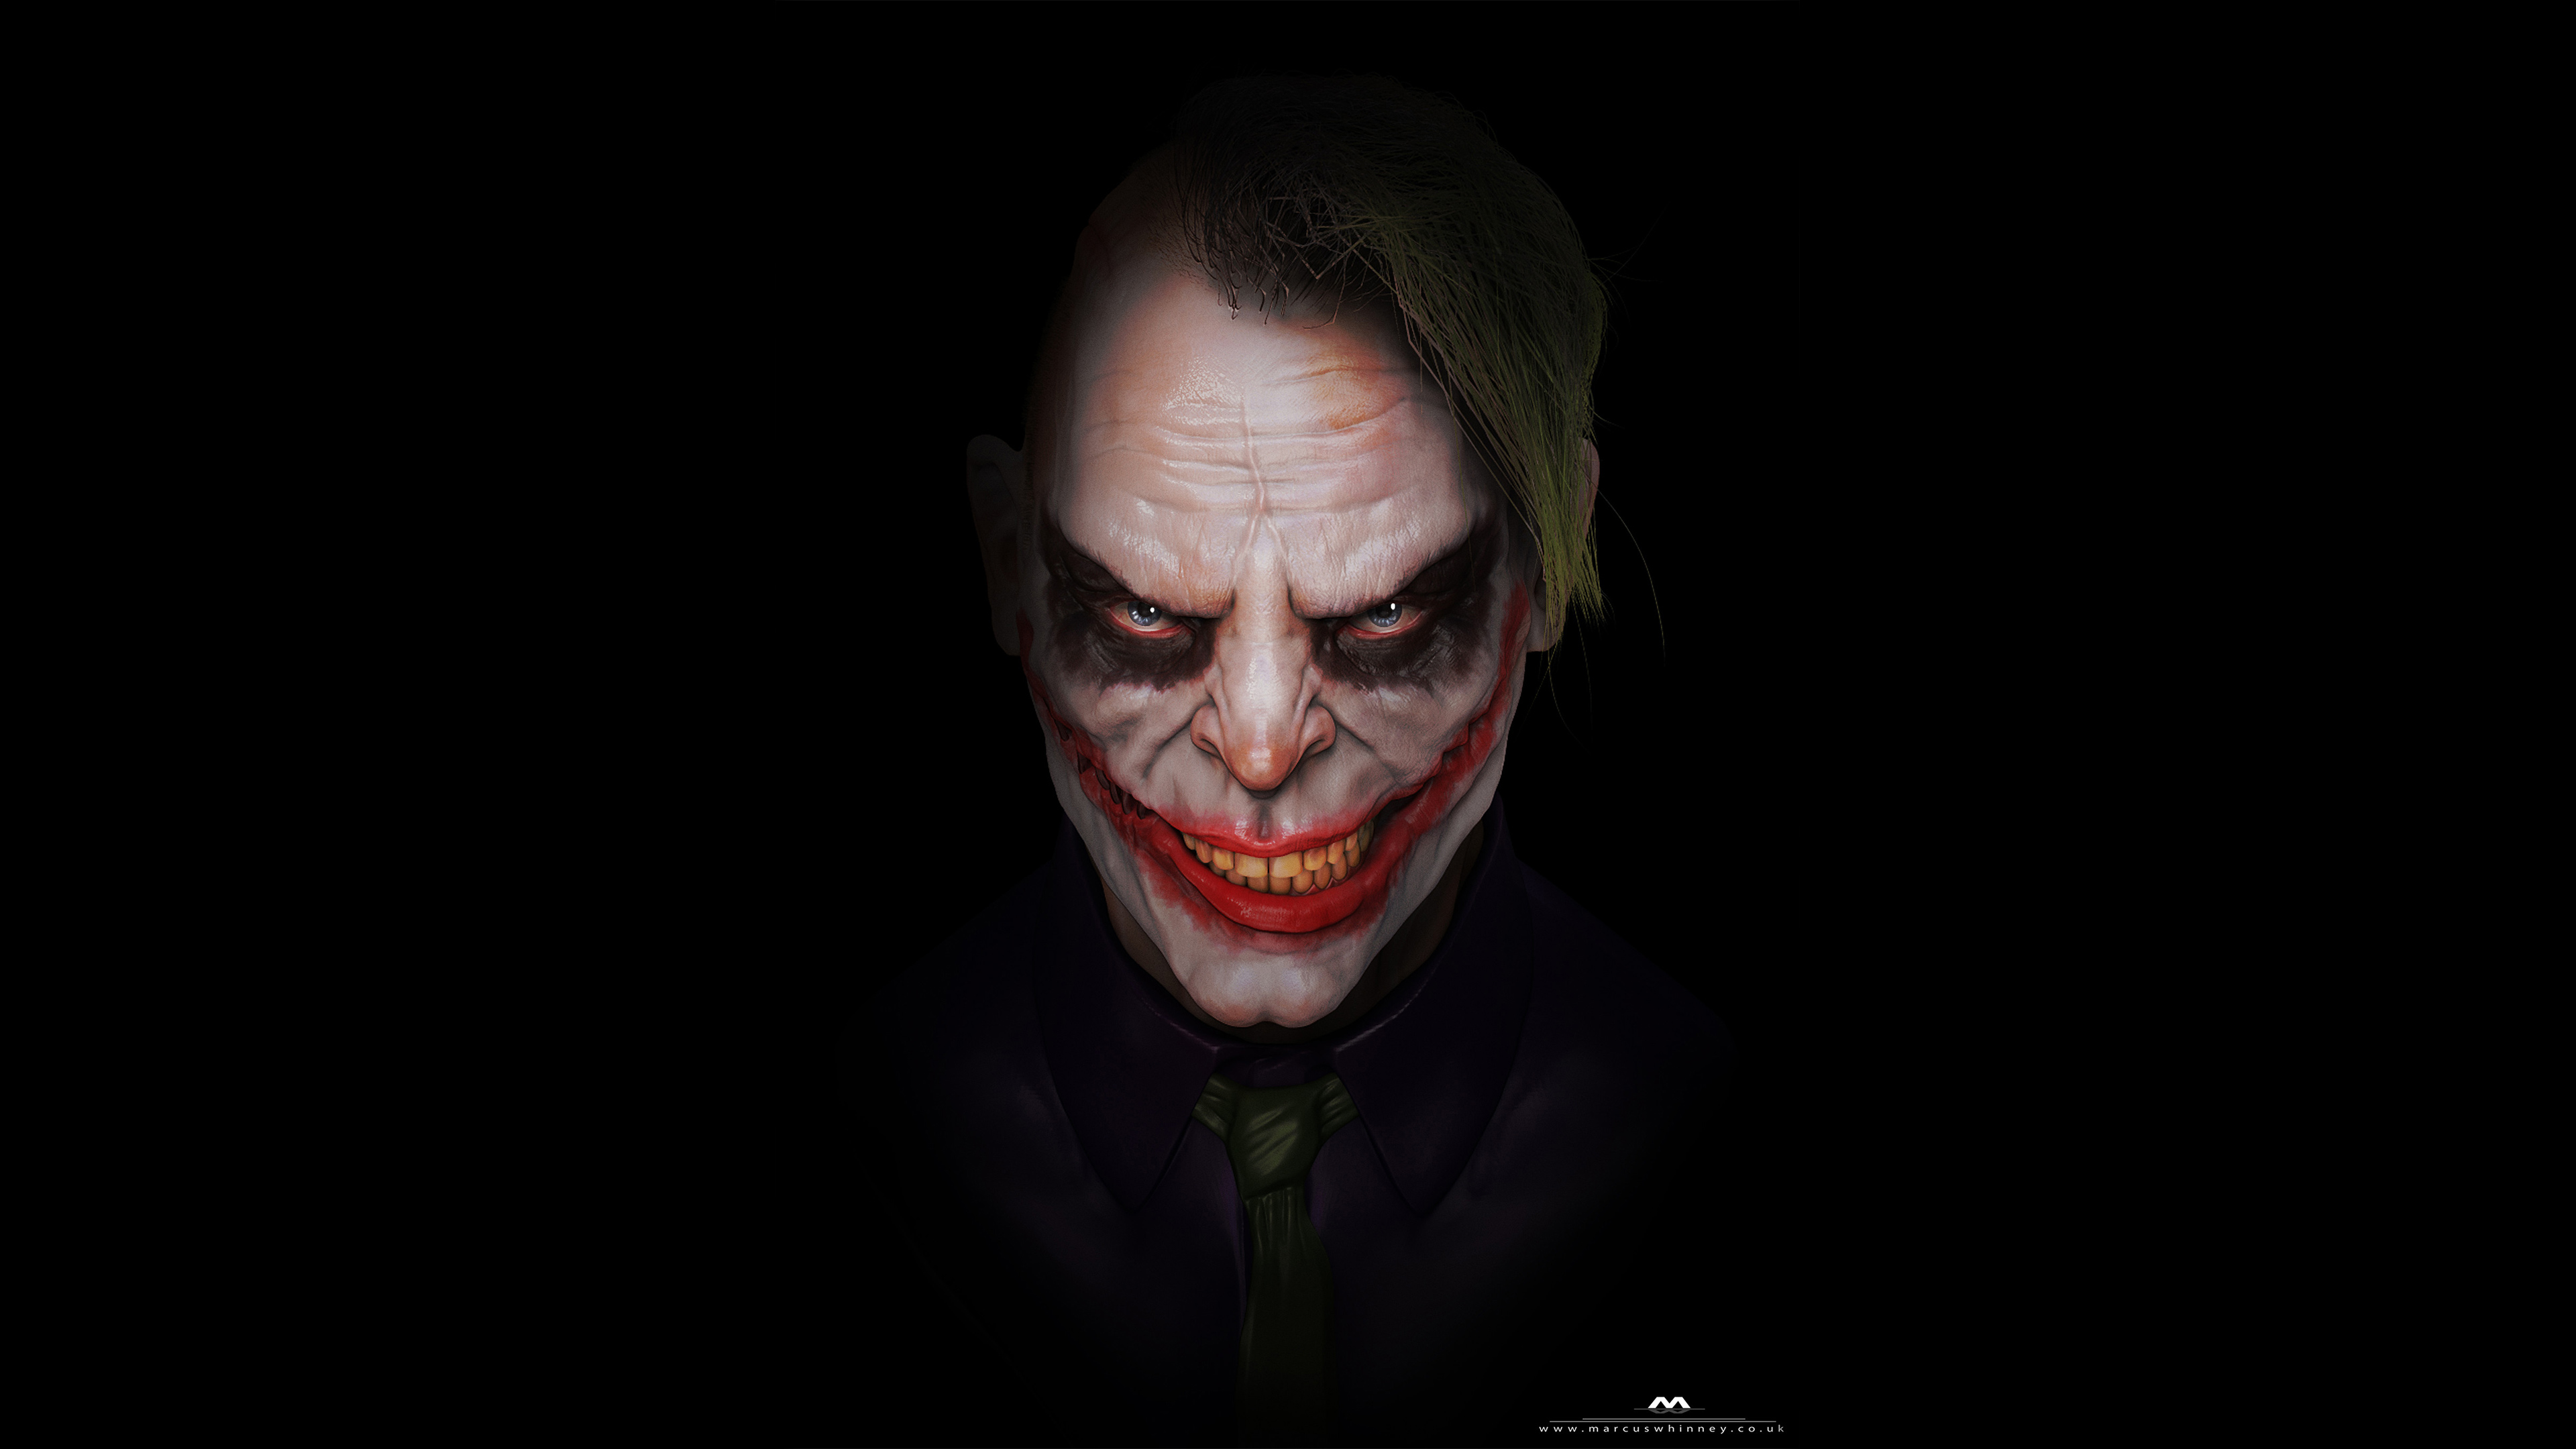 Scary Joker 4k, HD Superheroes, 4k Wallpapers, Images ...